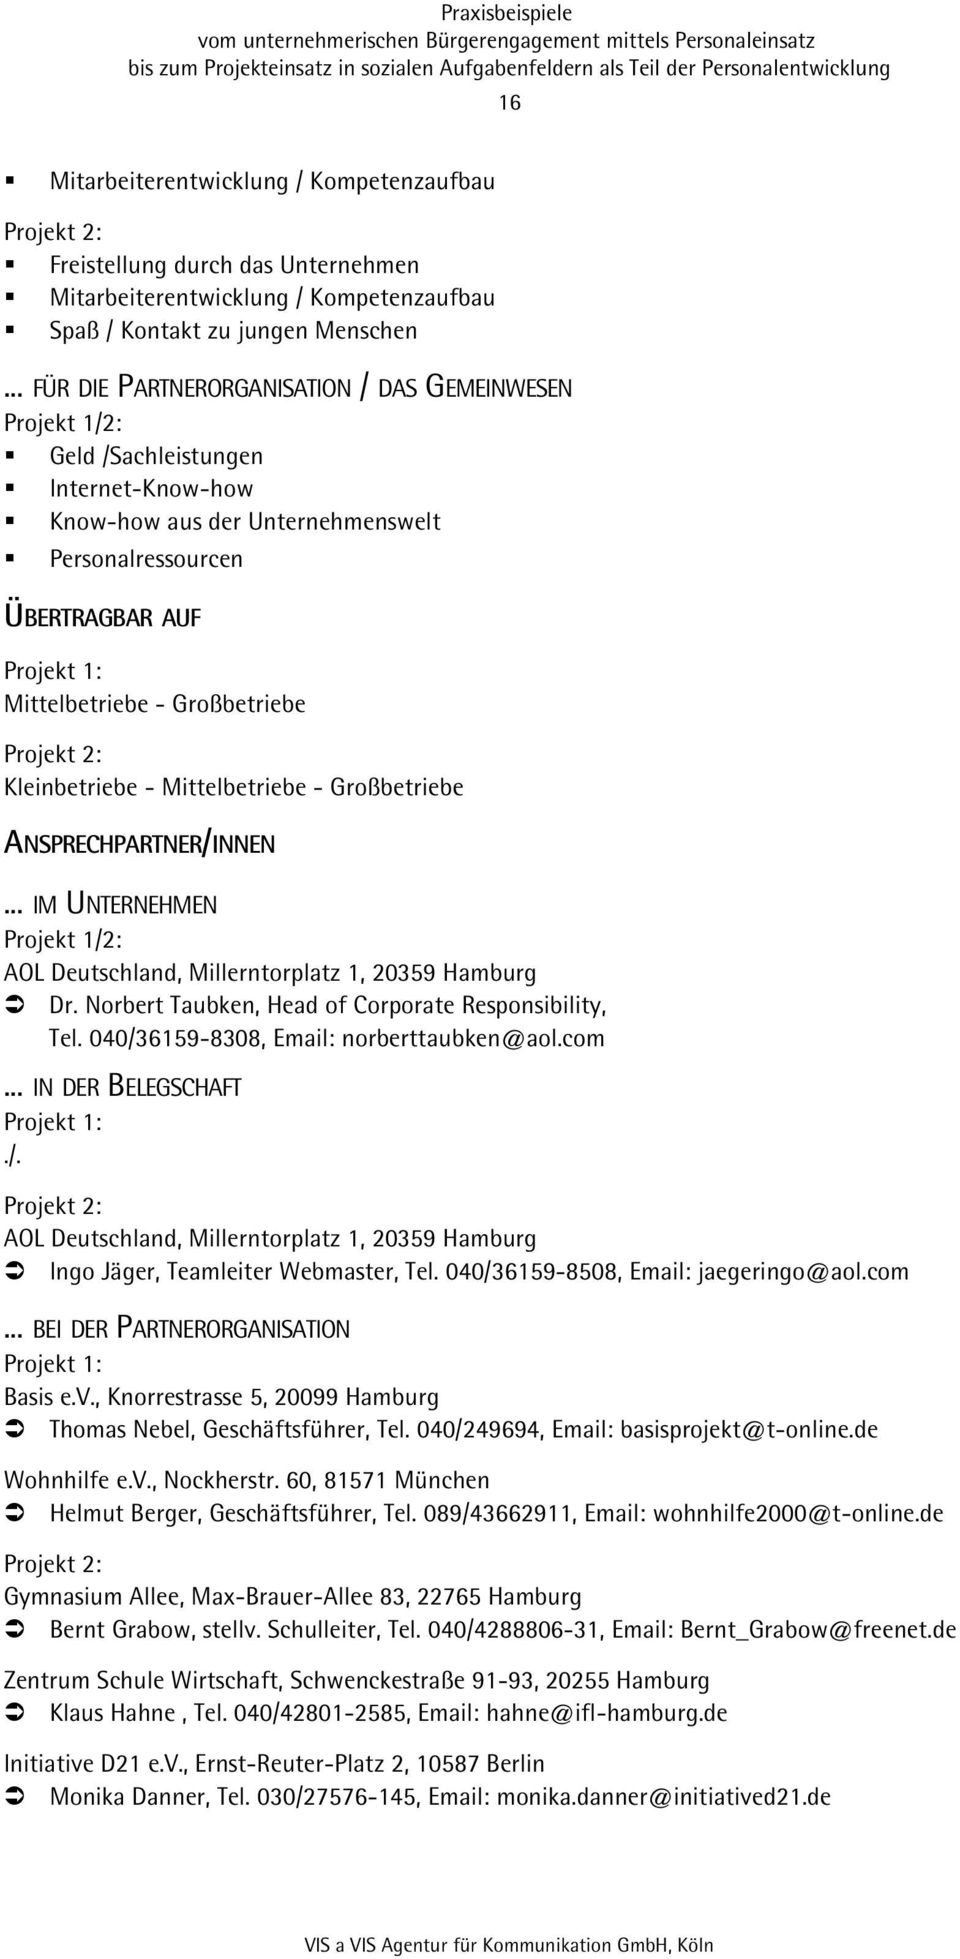 Großbetriebe Projekt 2: Kleinbetriebe - Mittelbetriebe - Großbetriebe ANSPRECHPARTNER/INNEN... IM UNTERNEHMEN Projekt 1/2: AOL Deutschland, Millerntorplatz 1, 20359 Hamburg Dr.